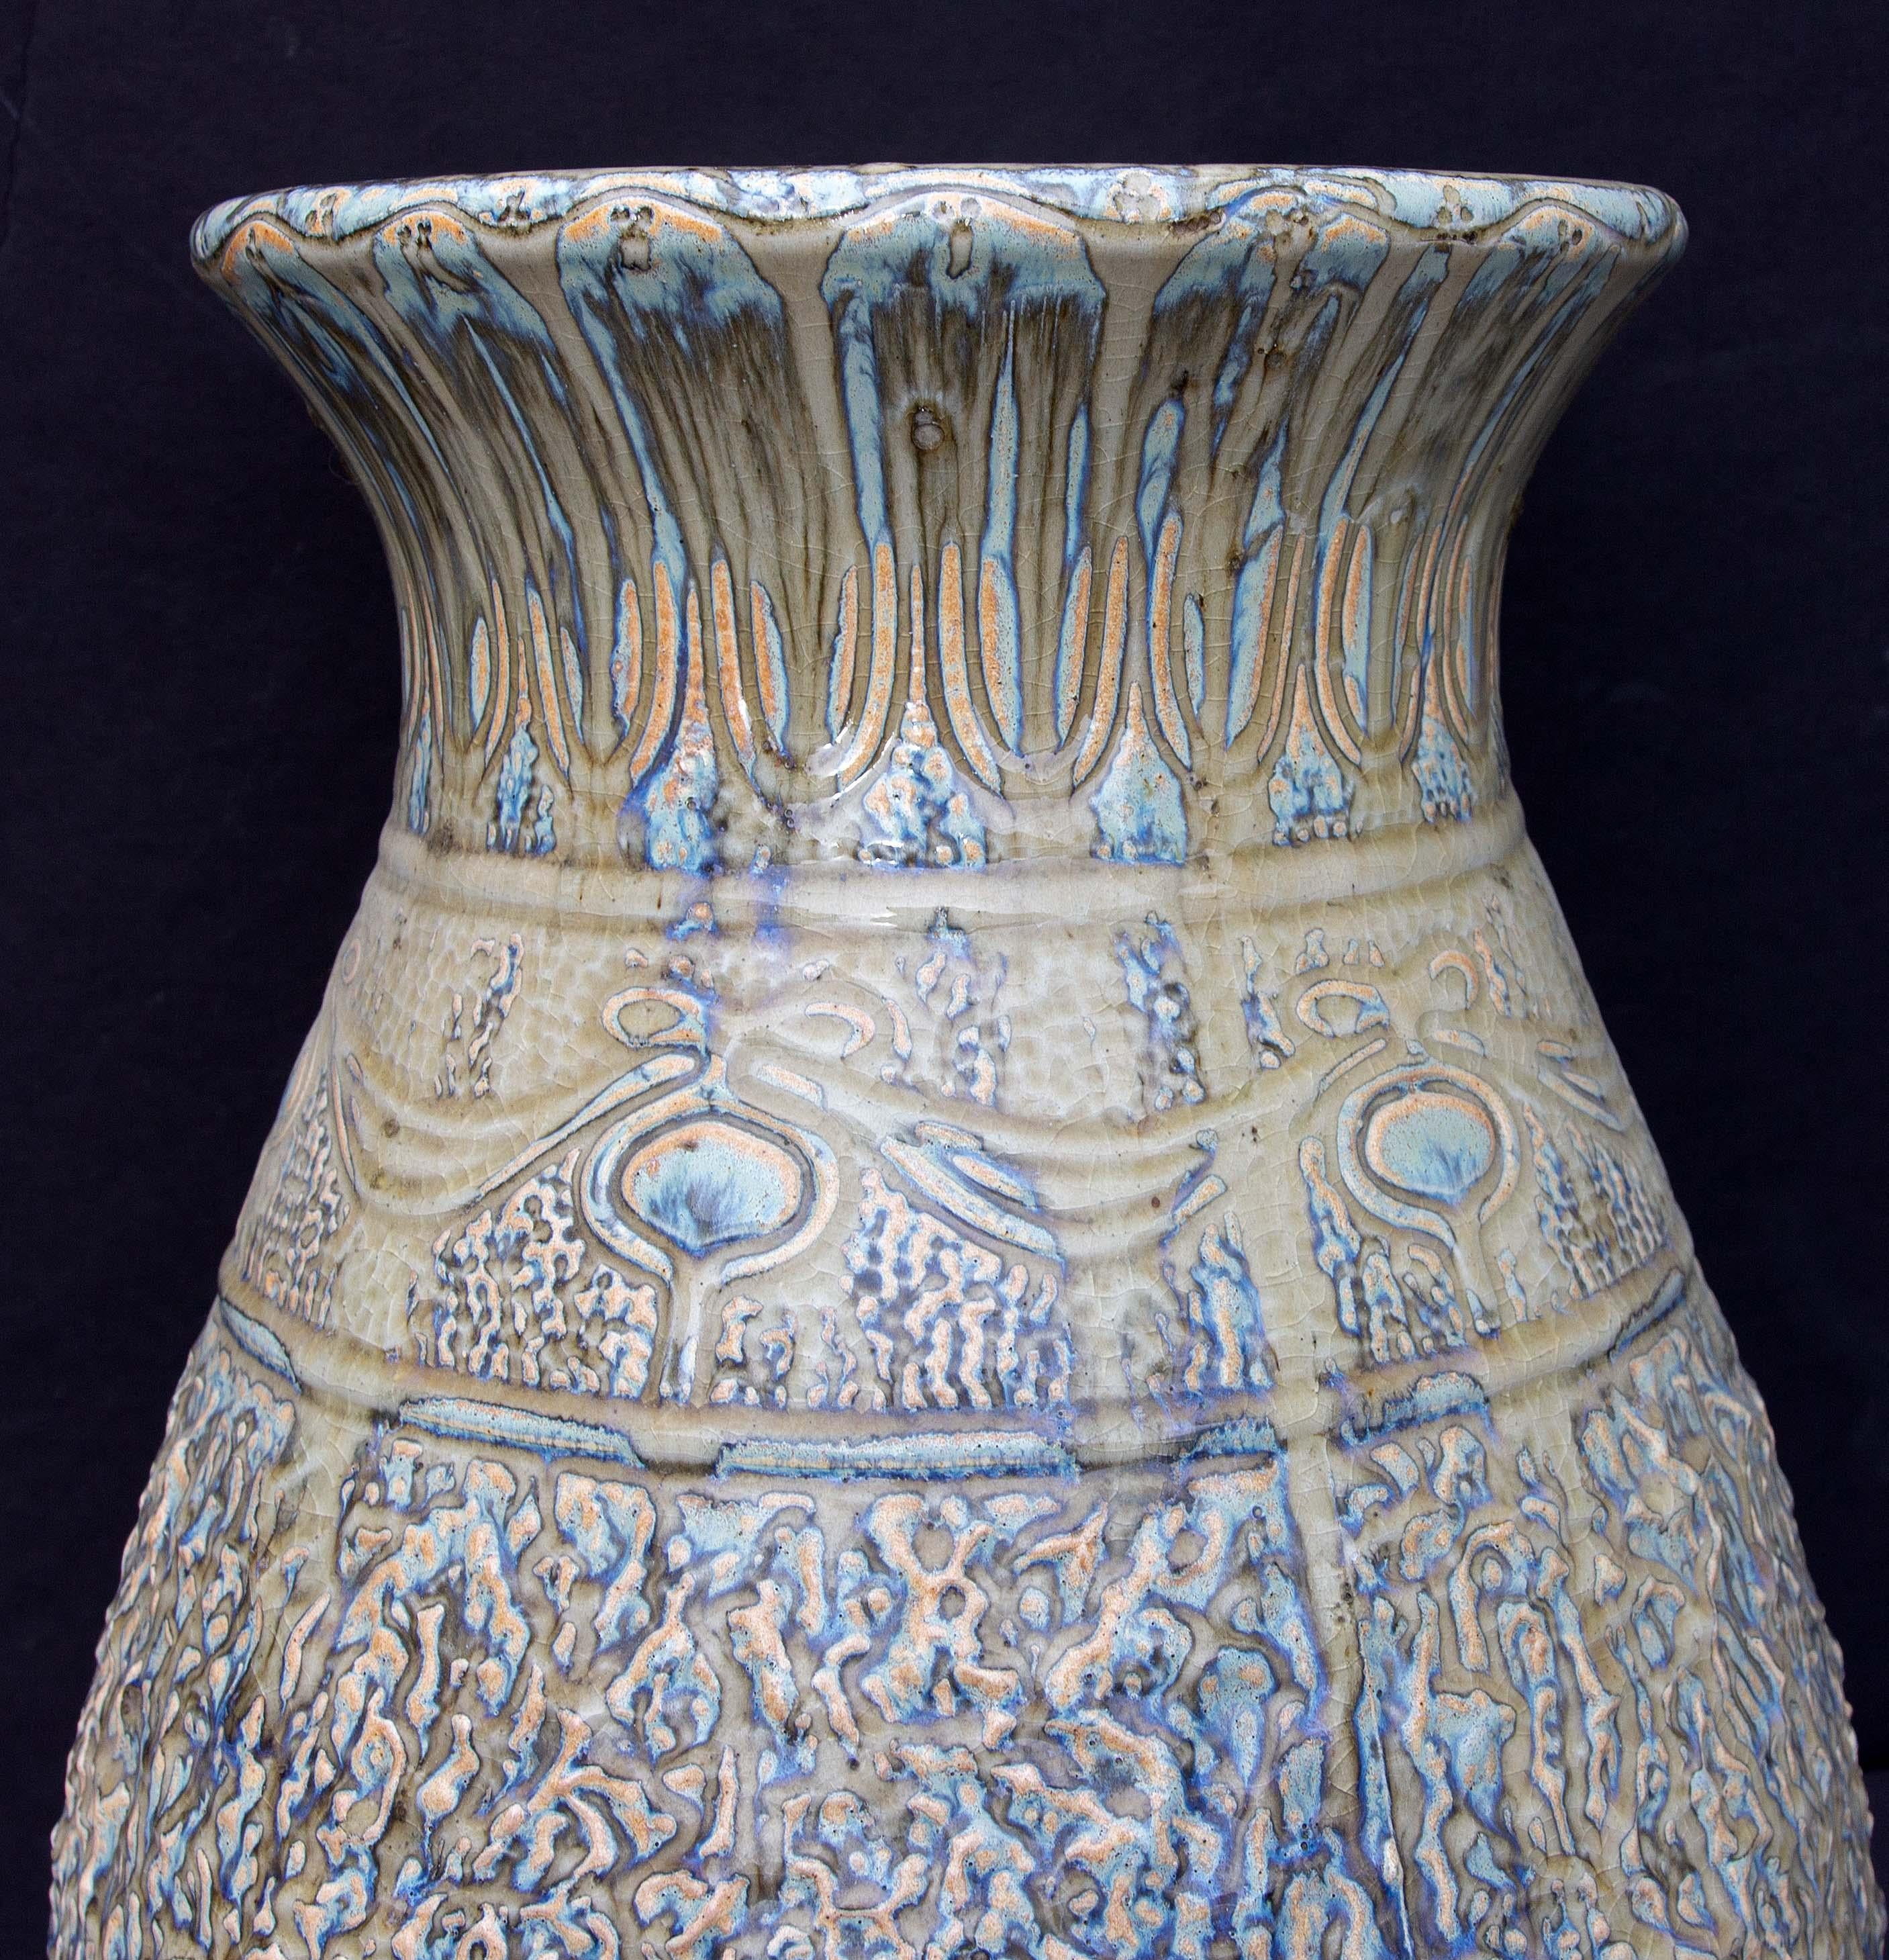 Große antike Bodenvase aus Keramik. Starke Tropfglasur. Möglicherweise belgisch. Anfang des 20. Jahrhunderts. Unmarkiert.